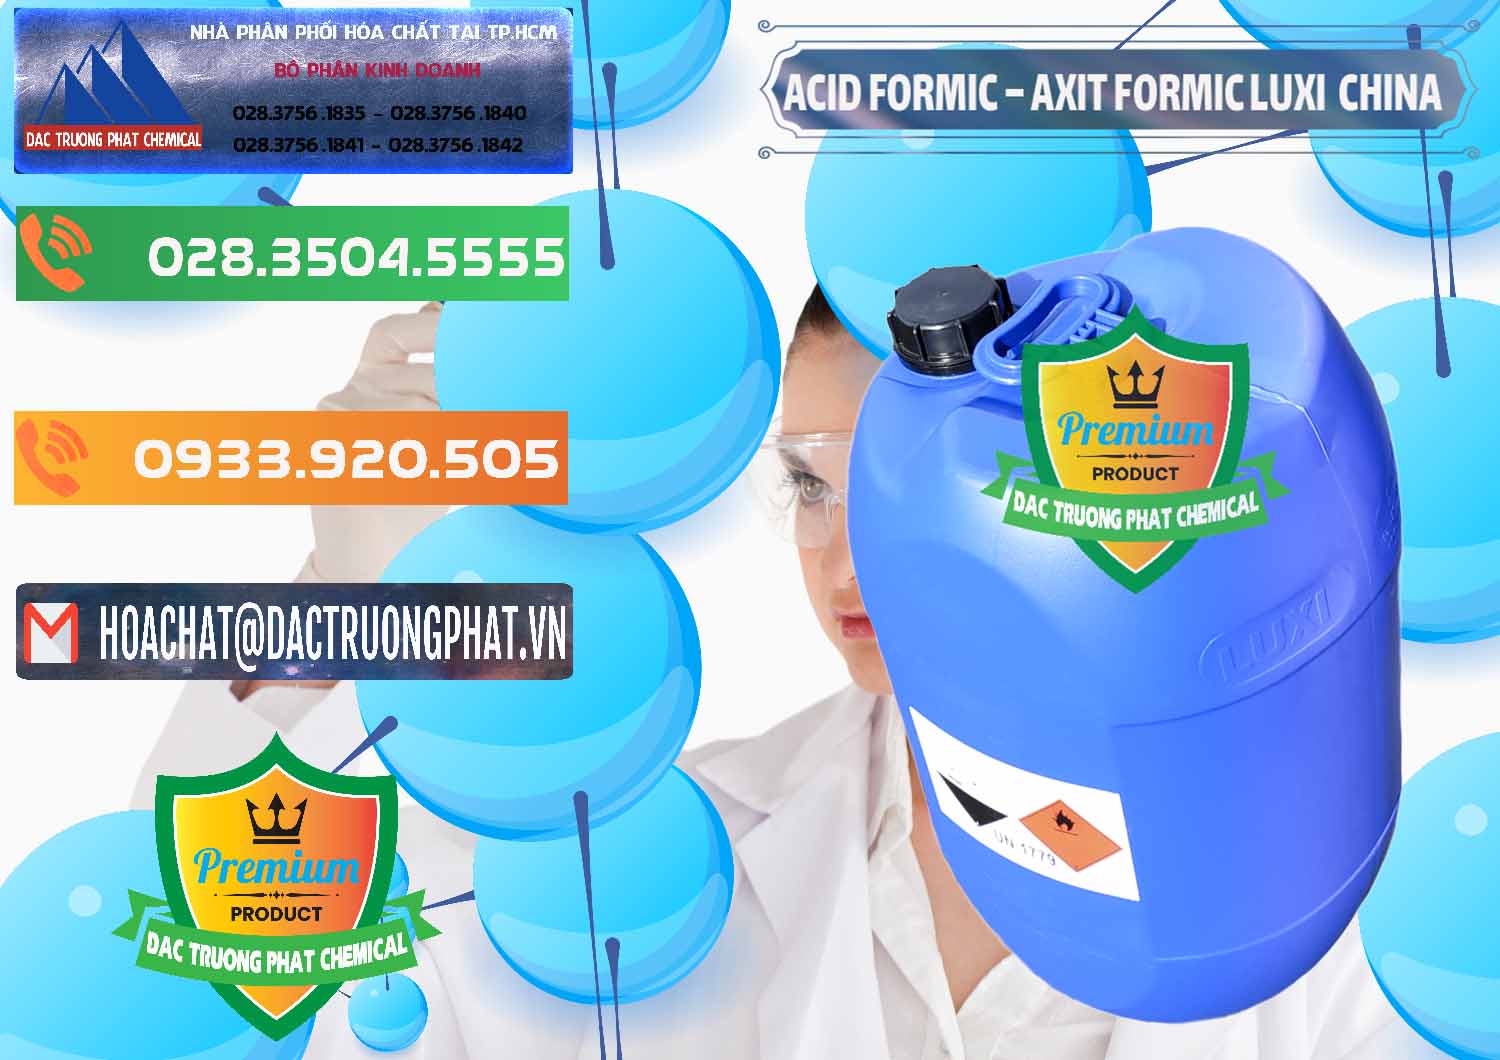 Cty chuyên kinh doanh - bán Acid Formic - Axit Formic Luxi Trung Quốc China - 0029 - Cty phân phối & cung cấp hóa chất tại TP.HCM - hoachatxulynuoc.com.vn